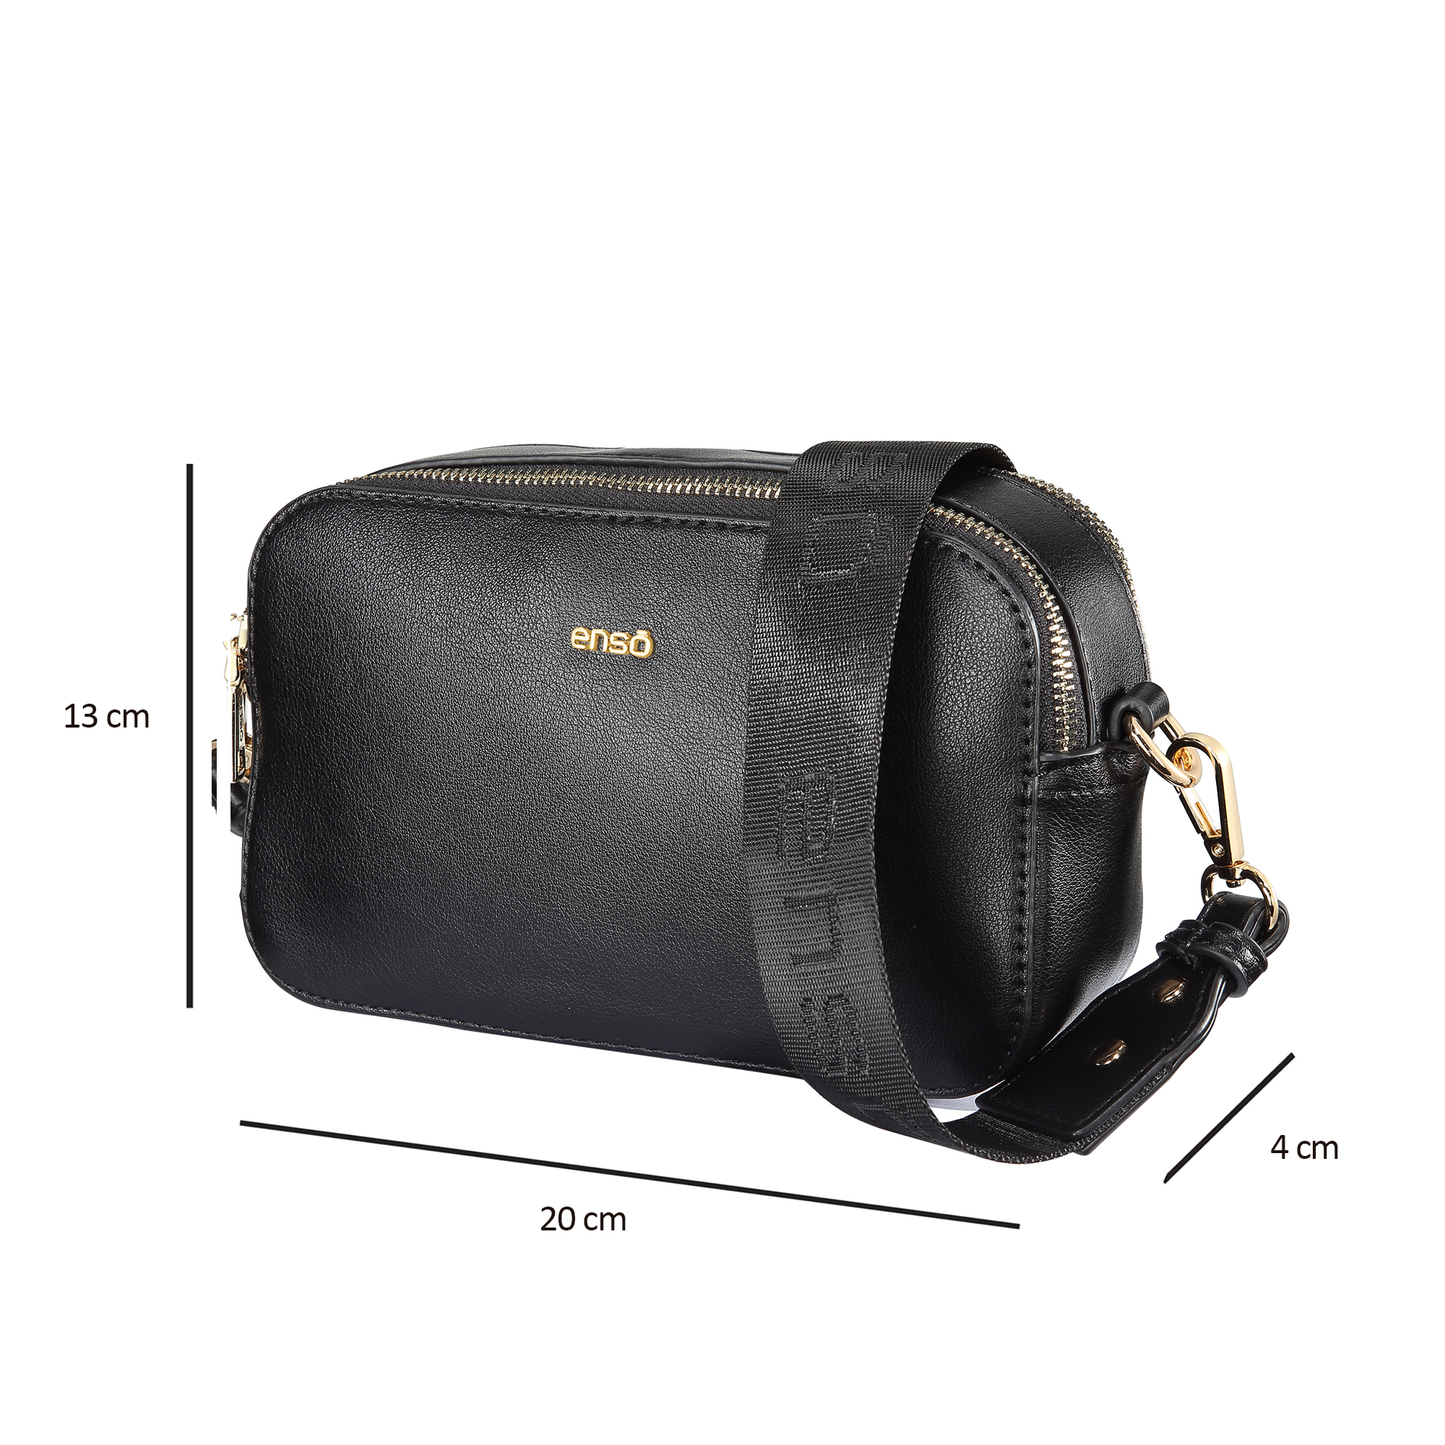 Bandolera Enso Black Bags EB303CBB Tipo Urbana Para Mujer